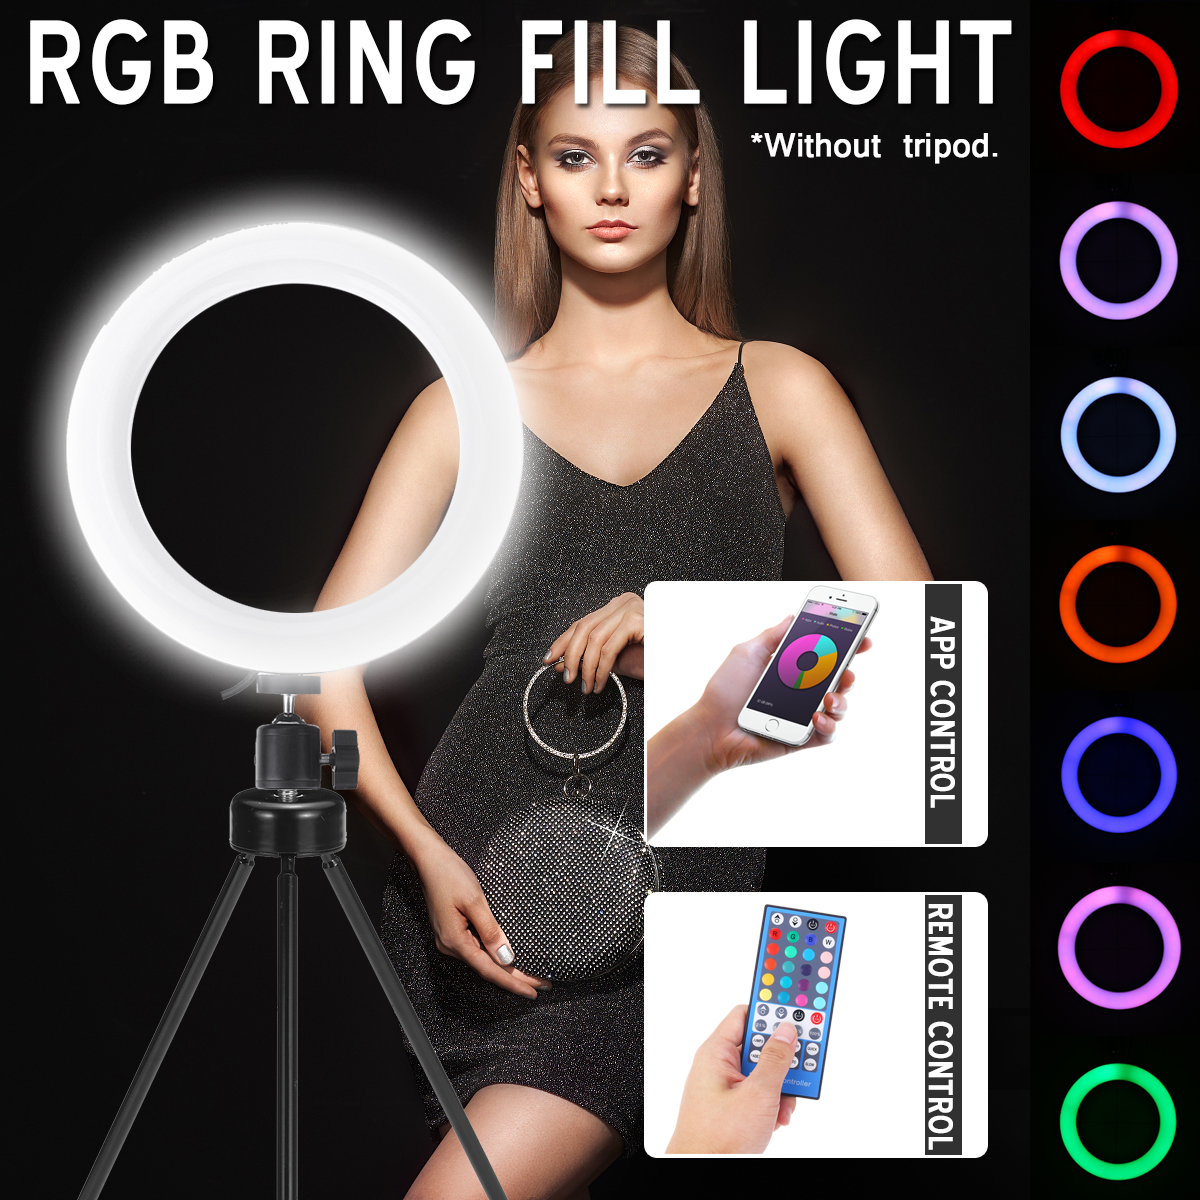 103-inch-RGBW-Full-Color-LED-Ring-Light-Mackup-Fill-Light-for-Photography-Selfie-Vlog-Youtube-Live-B-1720385-2